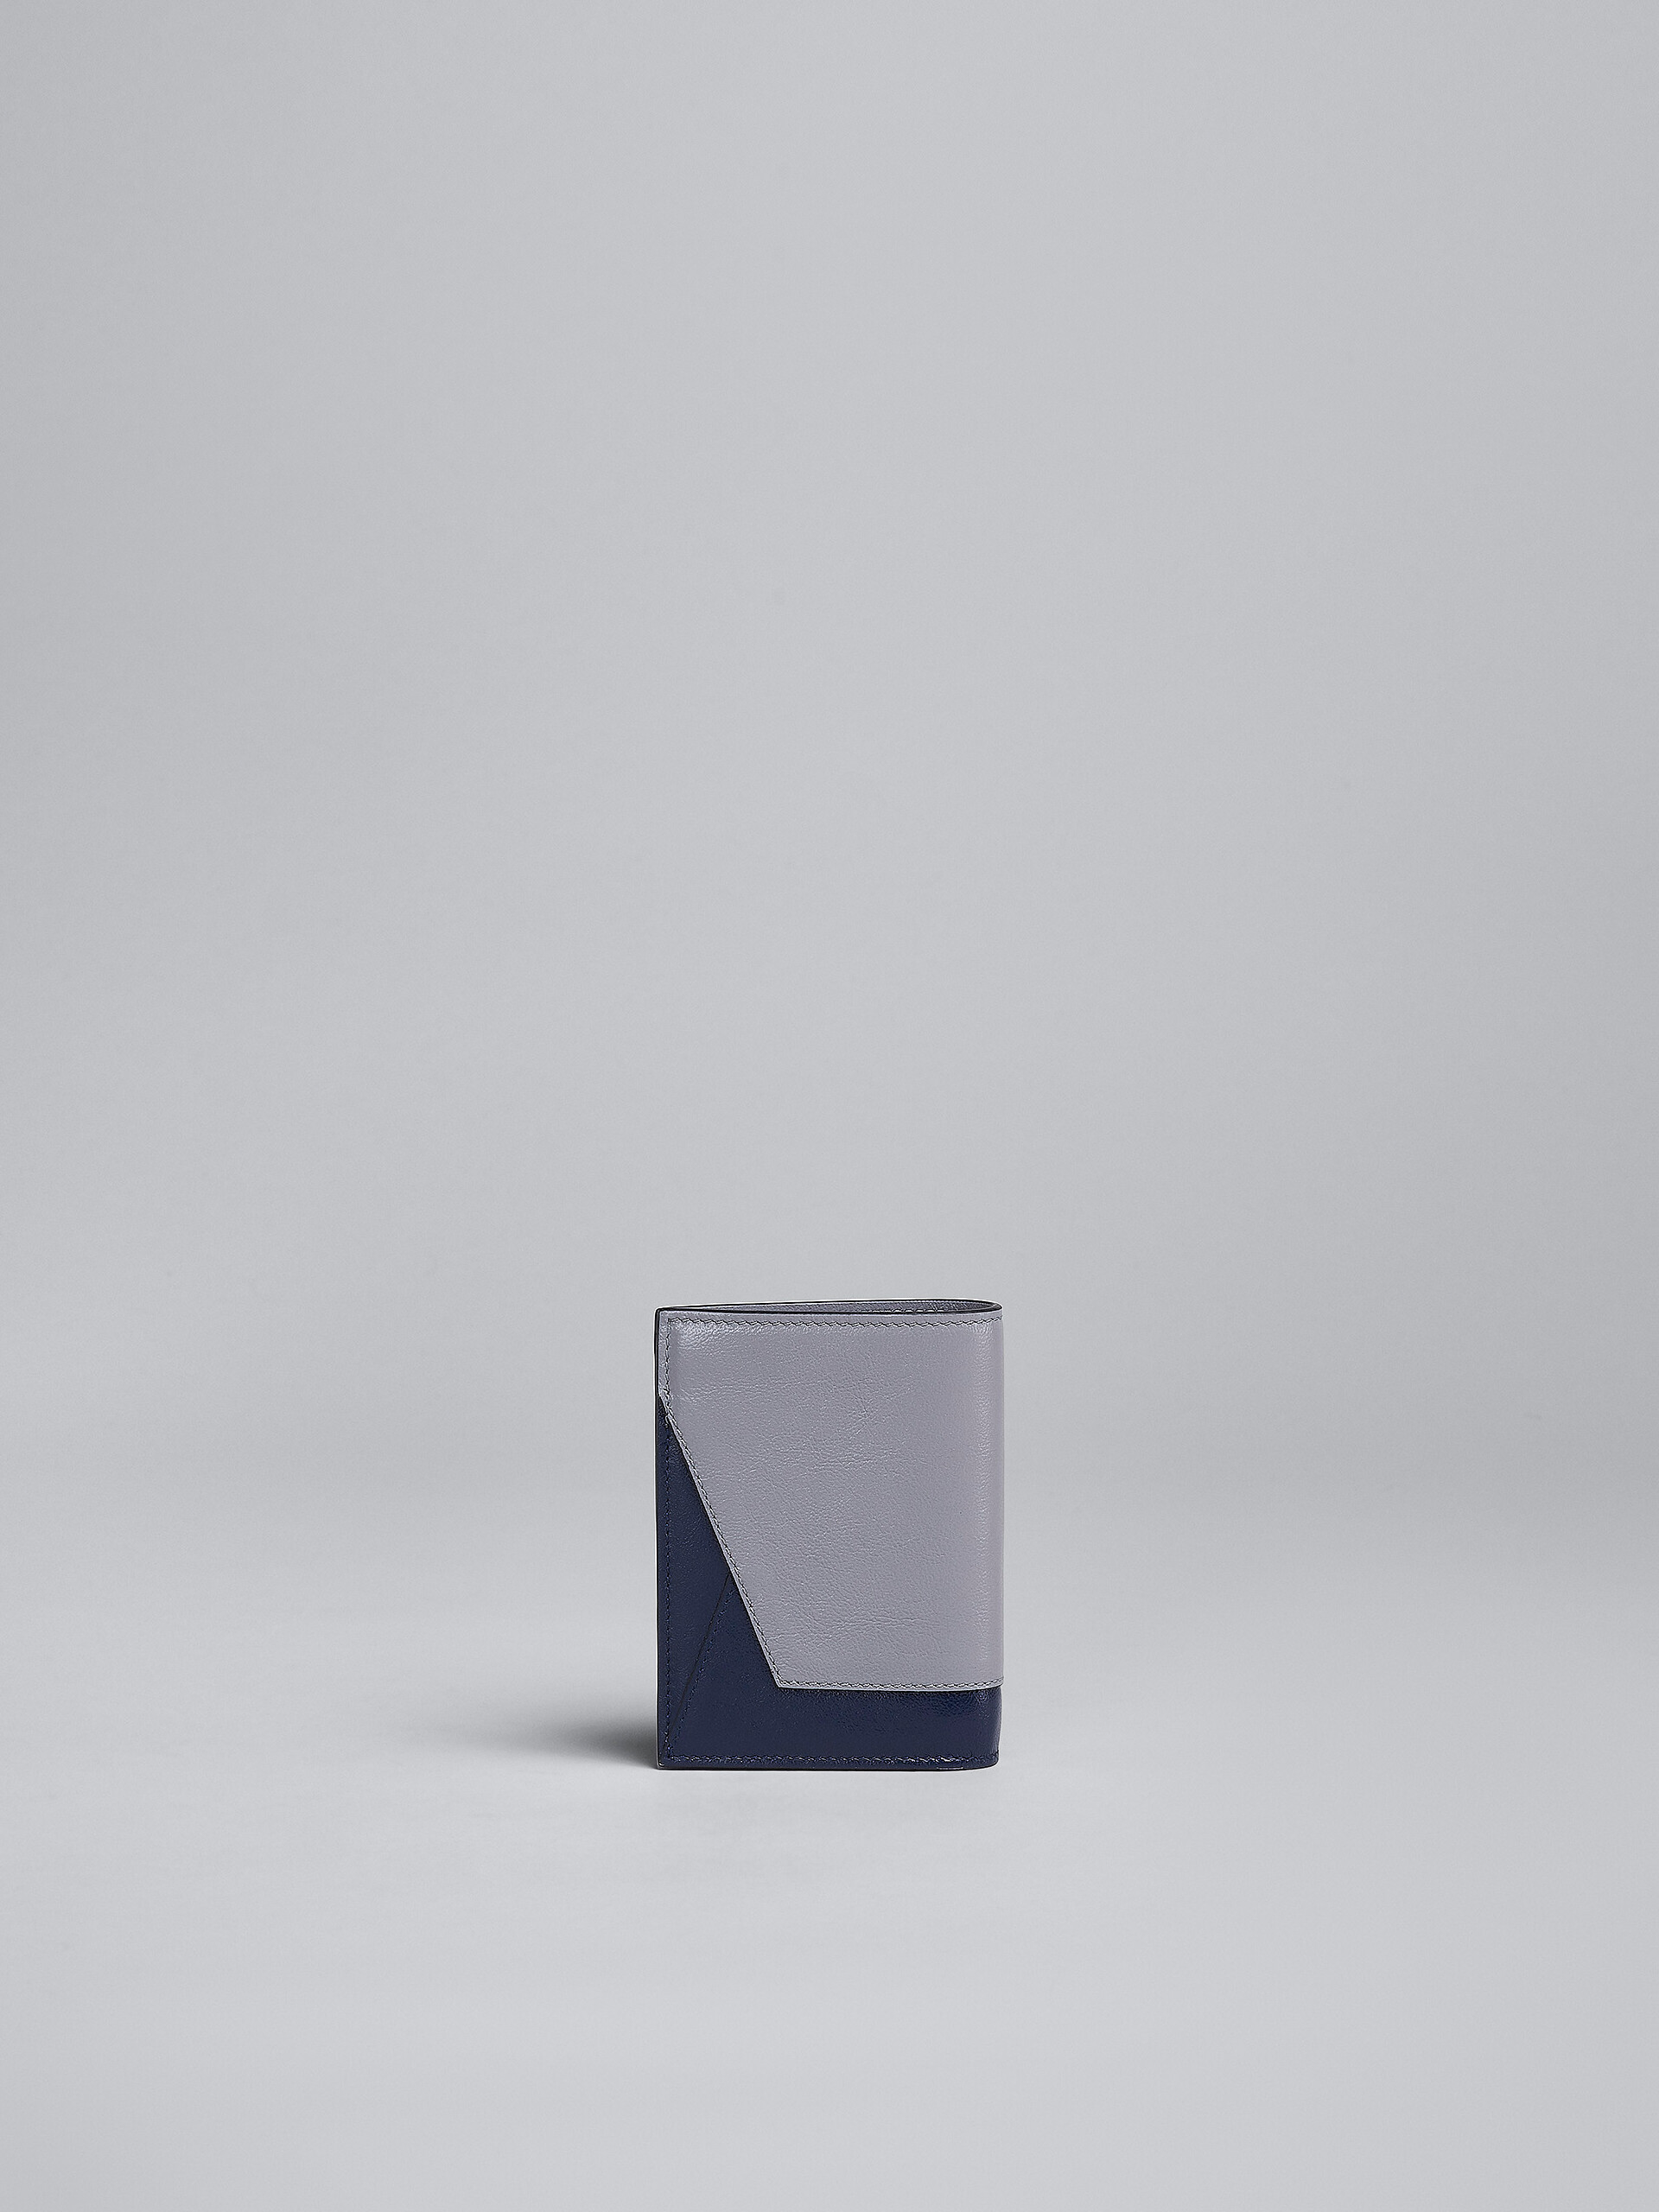 Zweifache Faltbrieftasche aus Leder in Grau und Blau - Brieftaschen - Image 3